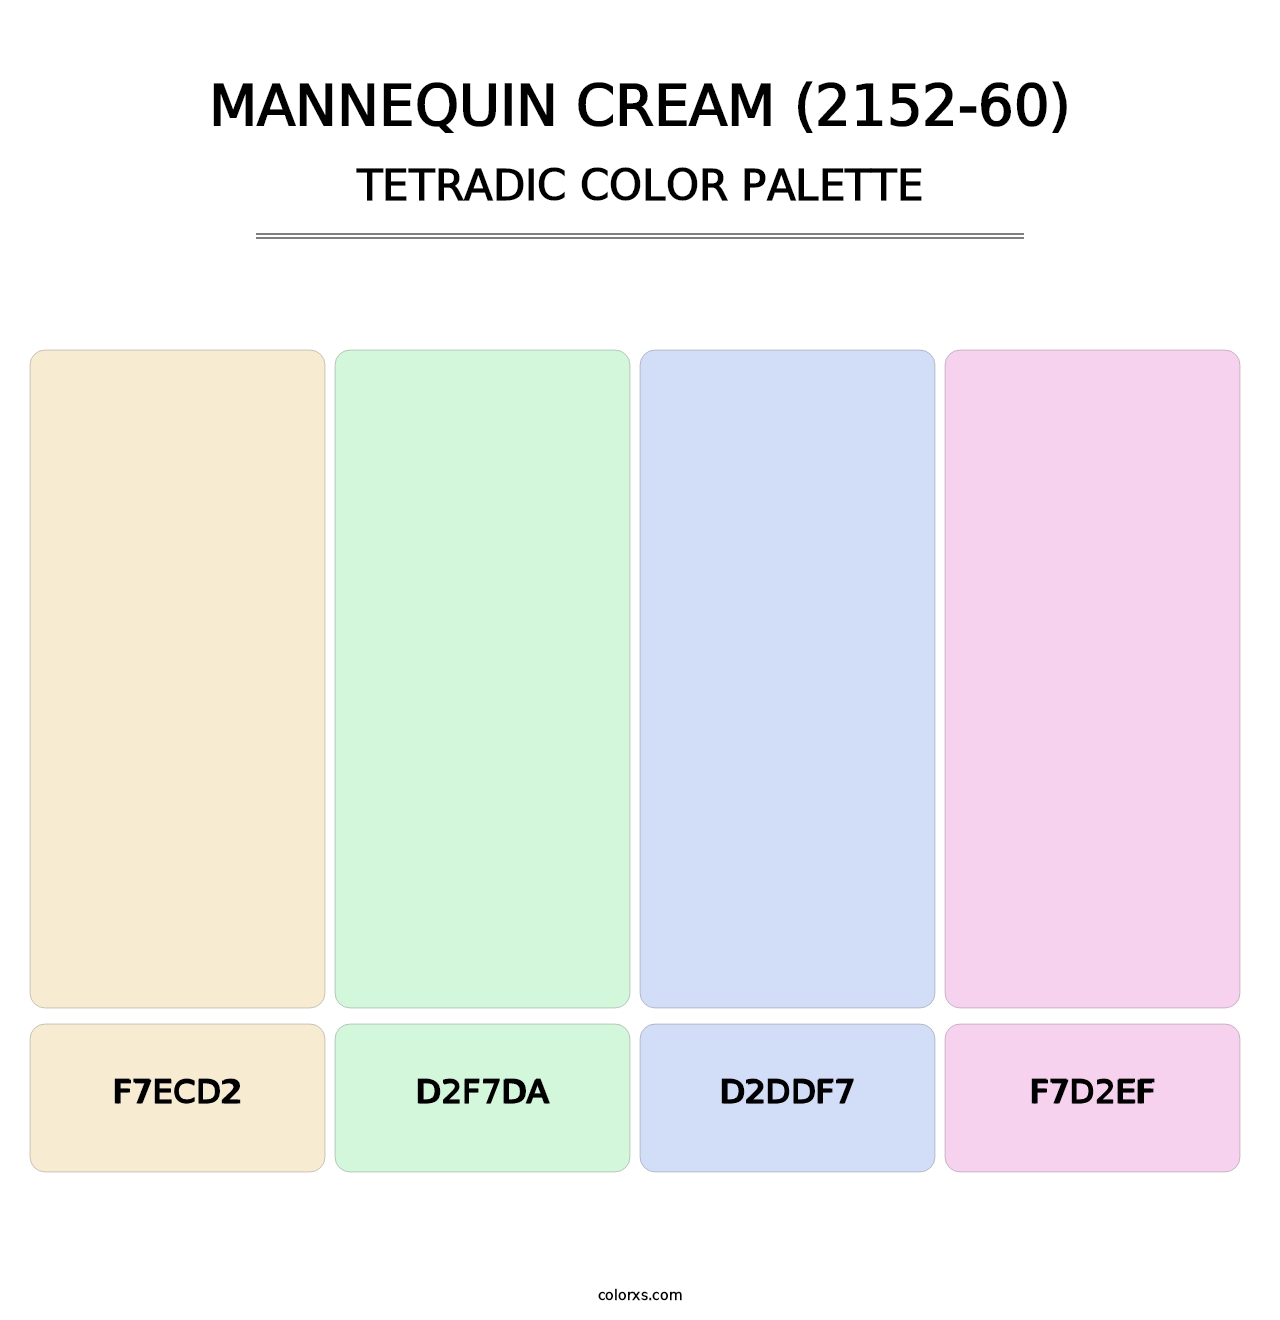 Mannequin Cream (2152-60) - Tetradic Color Palette